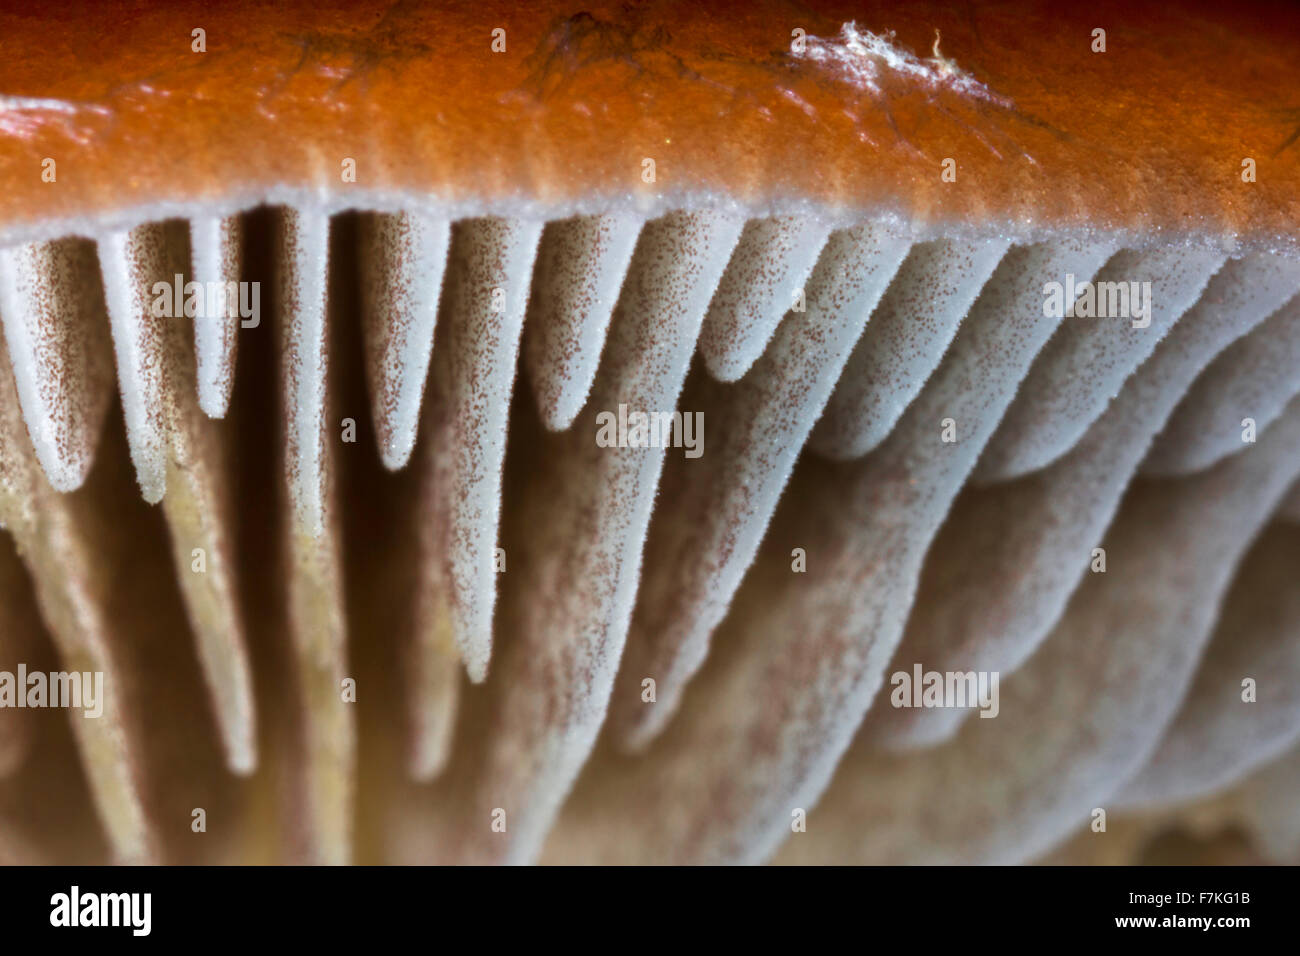 Mushroom, worm's eye view montrant le dessous du chapeau avec branchies / lamelles lamelles / Banque D'Images